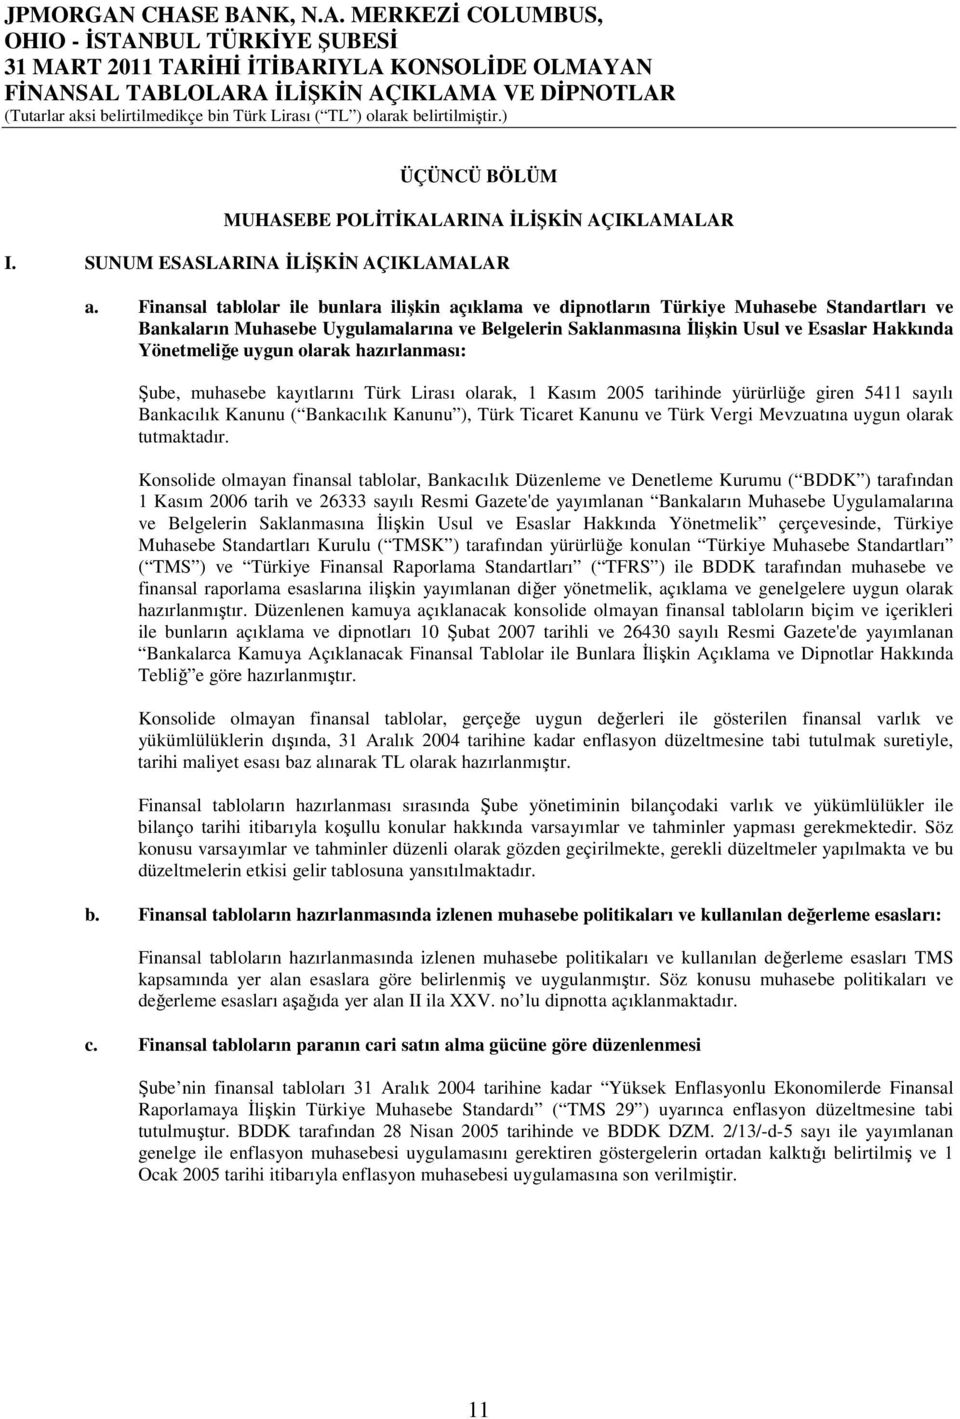 Yönetmeliğe uygun olarak hazırlanması: Şube, muhasebe kayıtlarını Türk Lirası olarak, 1 Kasım 2005 tarihinde yürürlüğe giren 5411 sayılı Bankacılık Kanunu ( Bankacılık Kanunu ), Türk Ticaret Kanunu